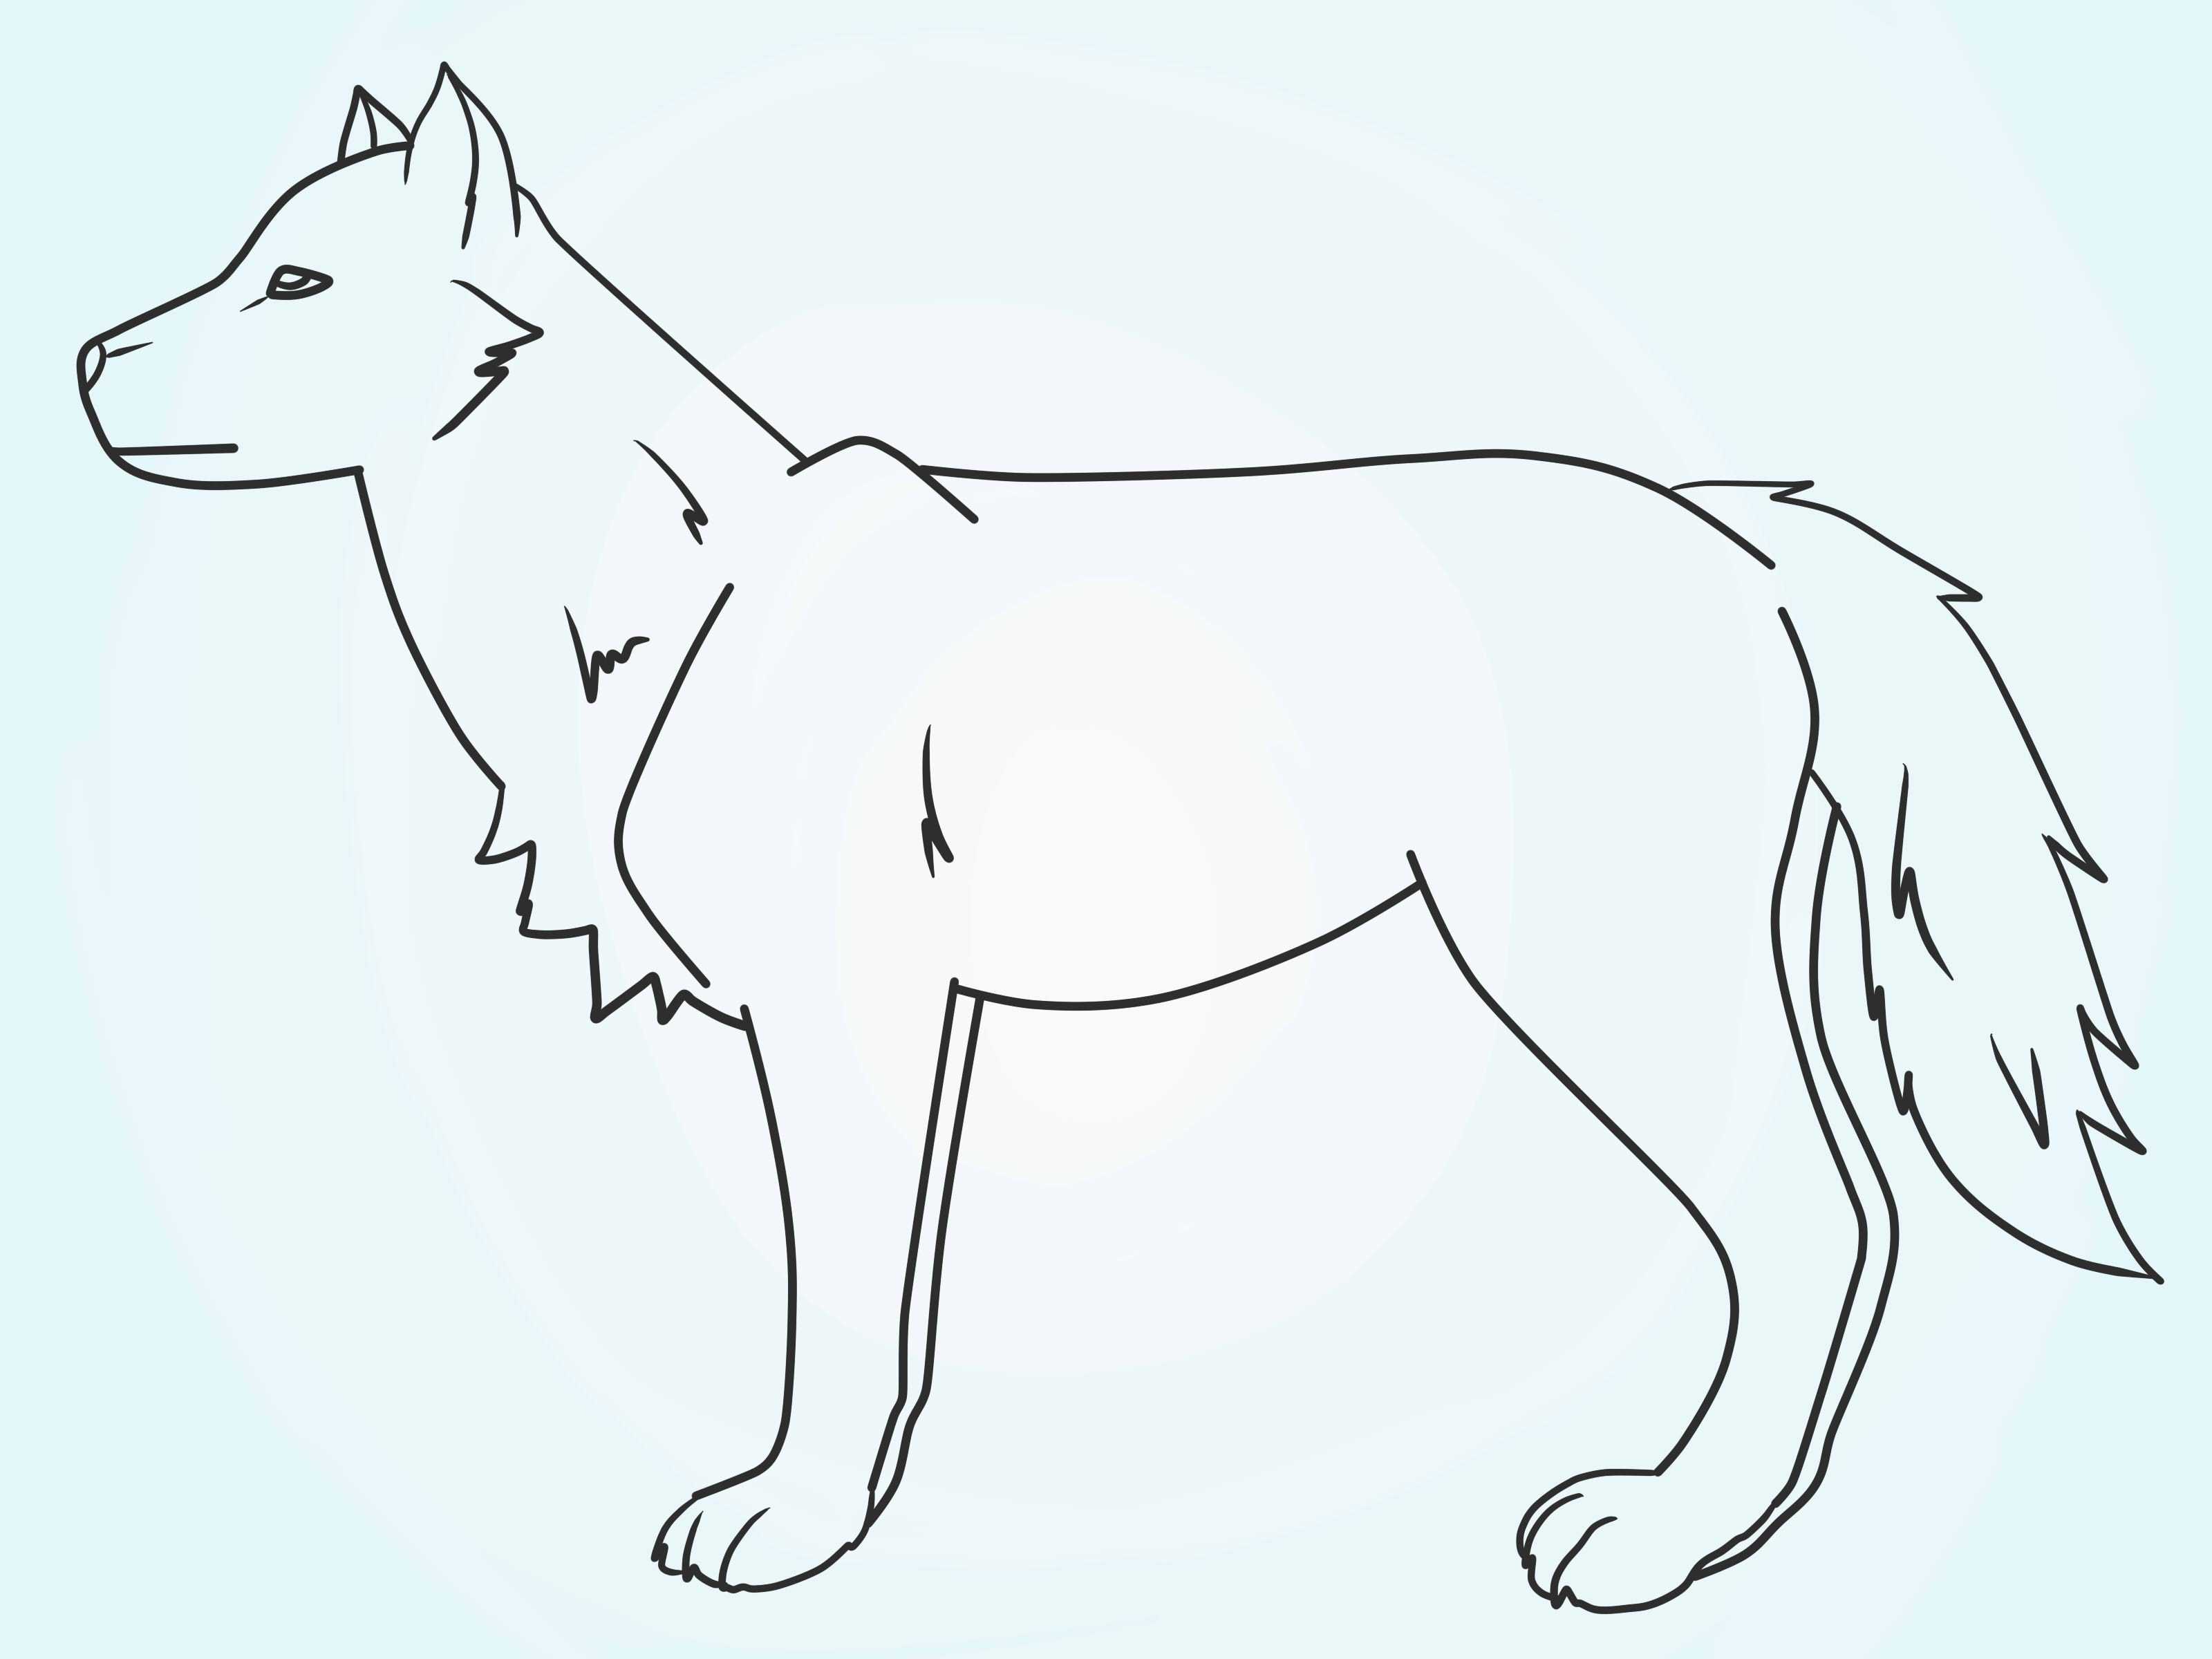 Рисованный волк цветной. как нарисовать волка поэтапно карандашом для начинающих из мультика «ну, погоди!» и воющего на луну?